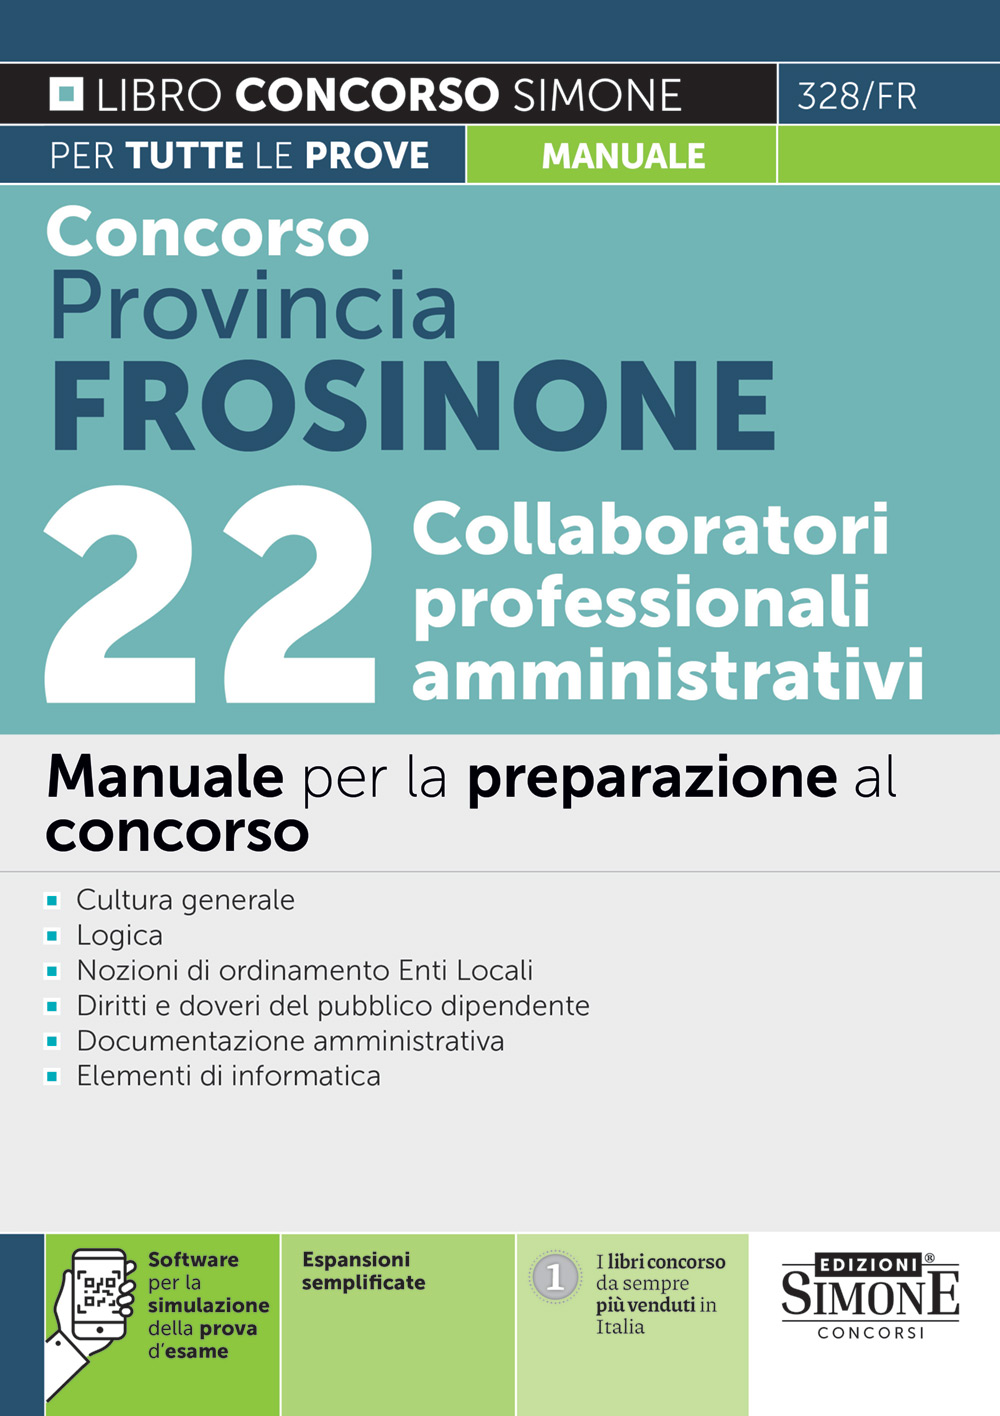 Concorso Provincia Frosinone - 22 Collaboratori professionali amministrativi - Manuale - 328/FR